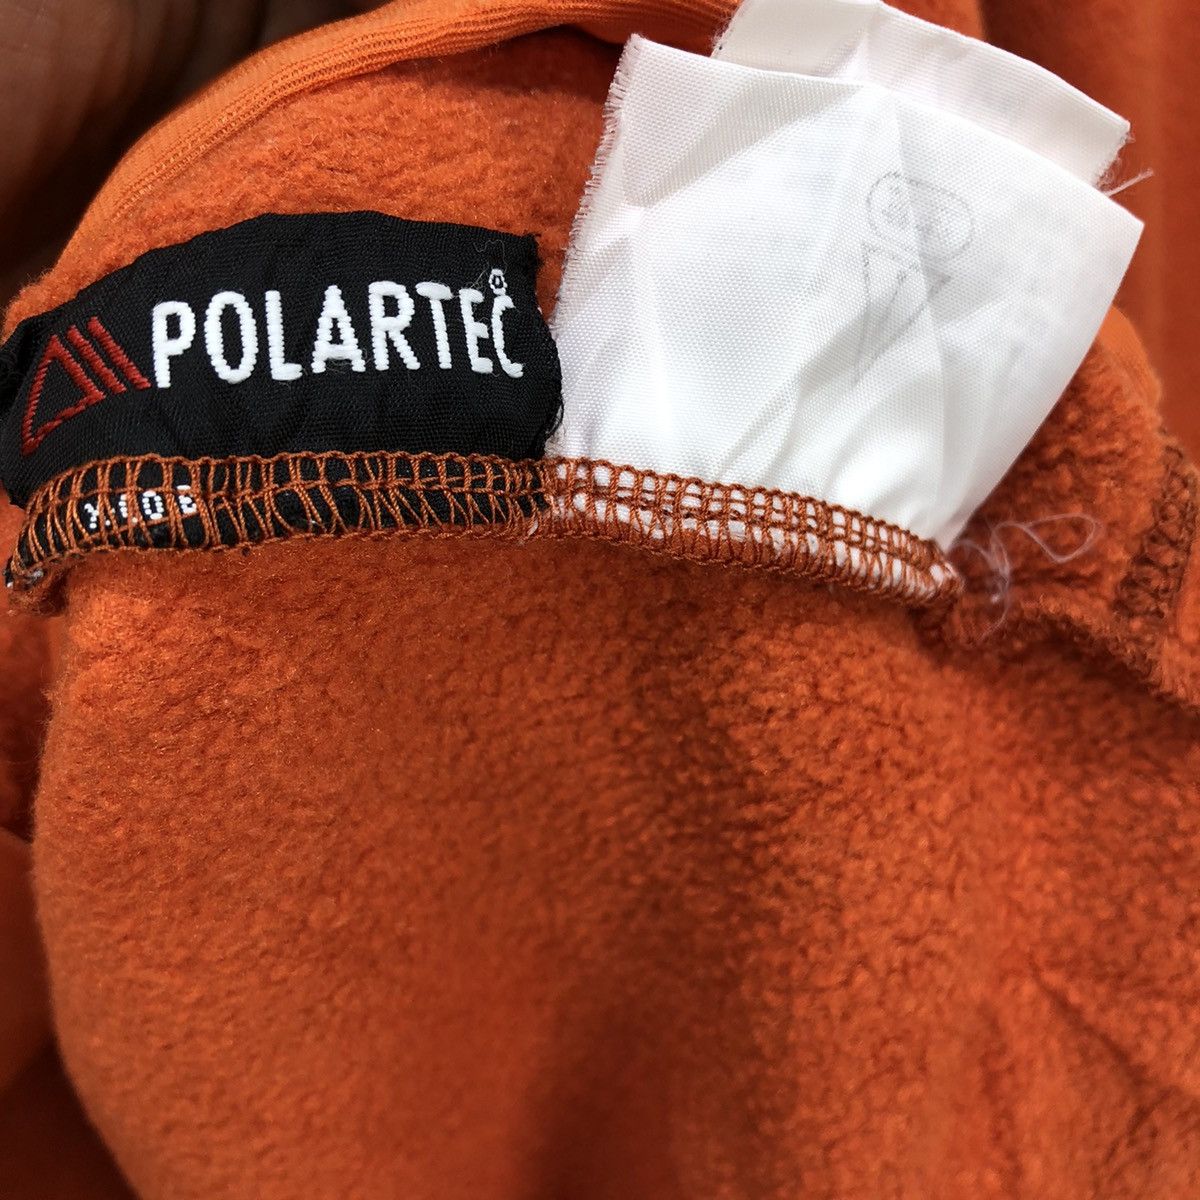 The North Face Polatec Fleece Zipper Jacket - 10